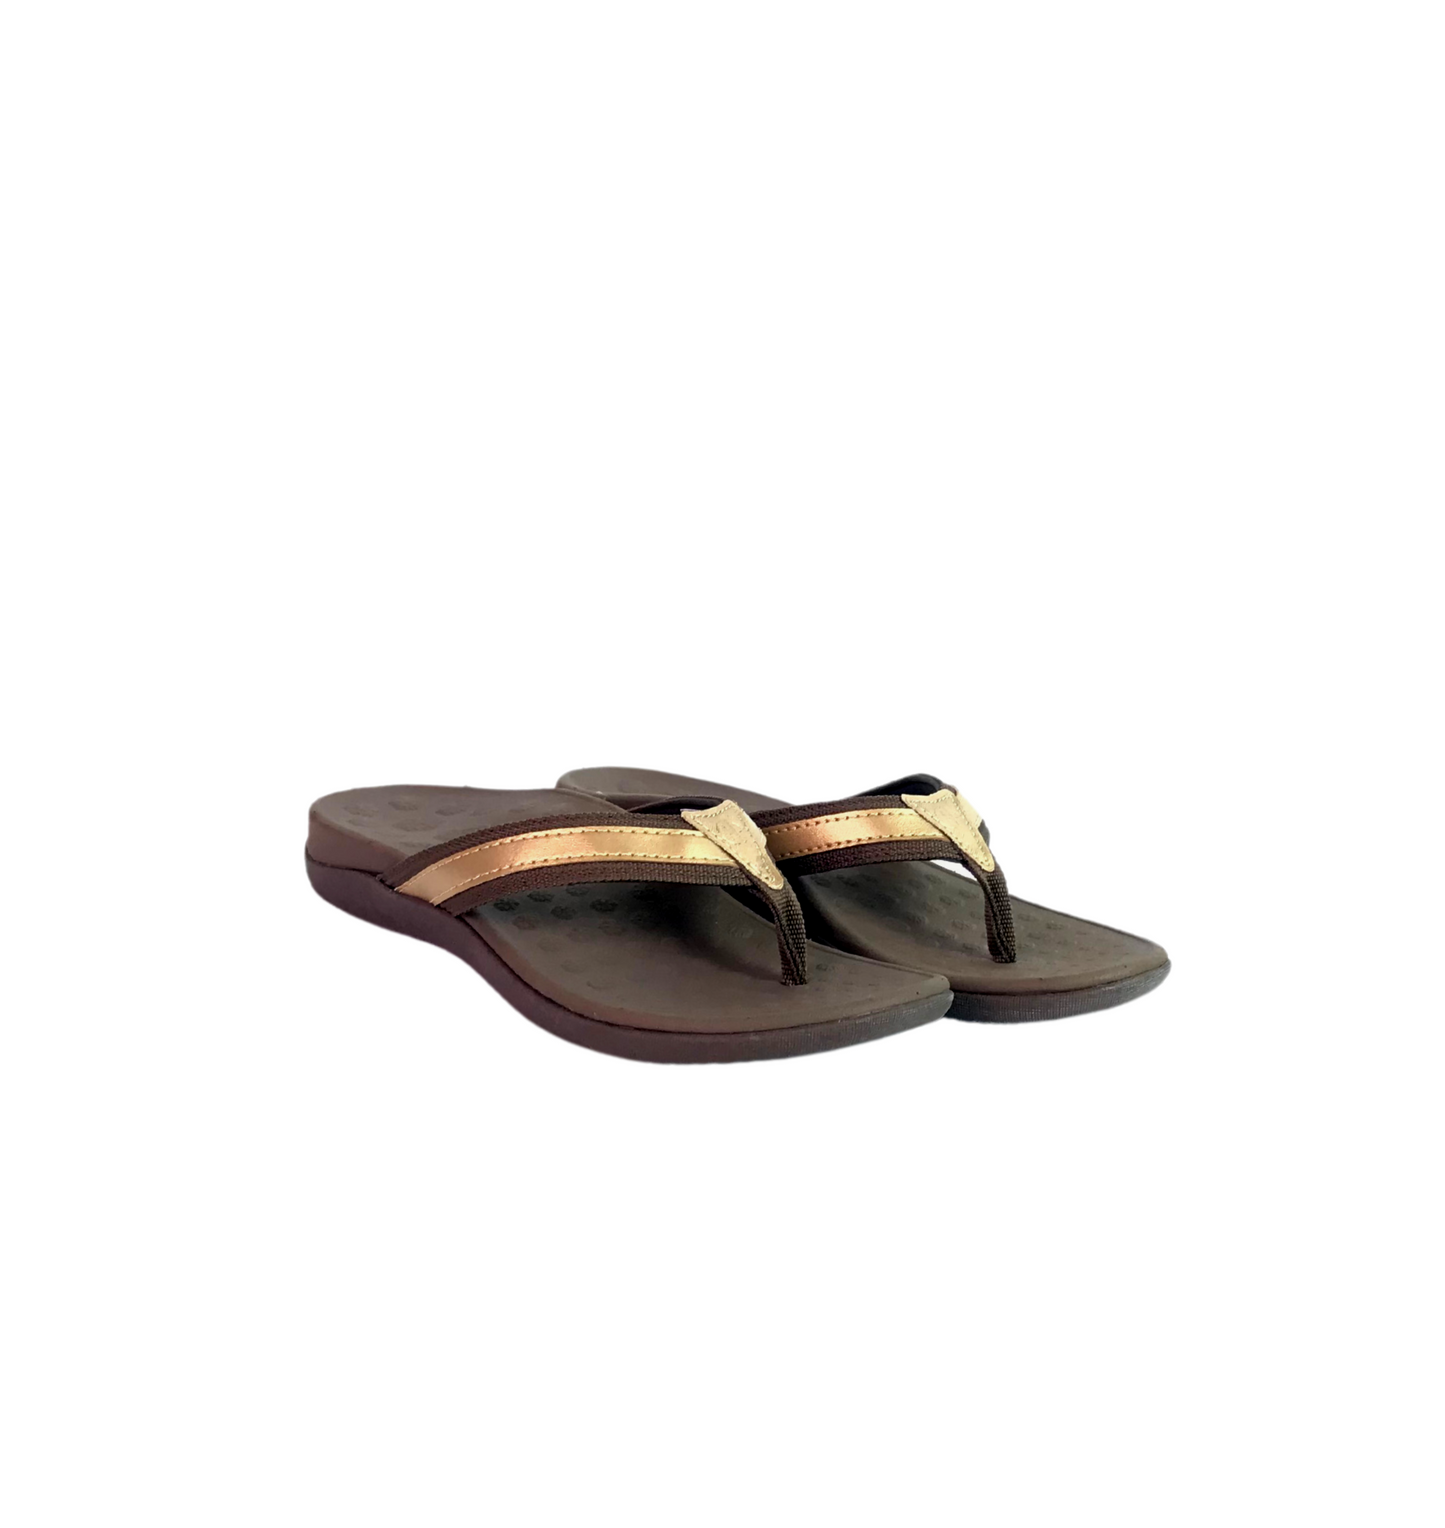 Unisex Brown Stylish Sandals